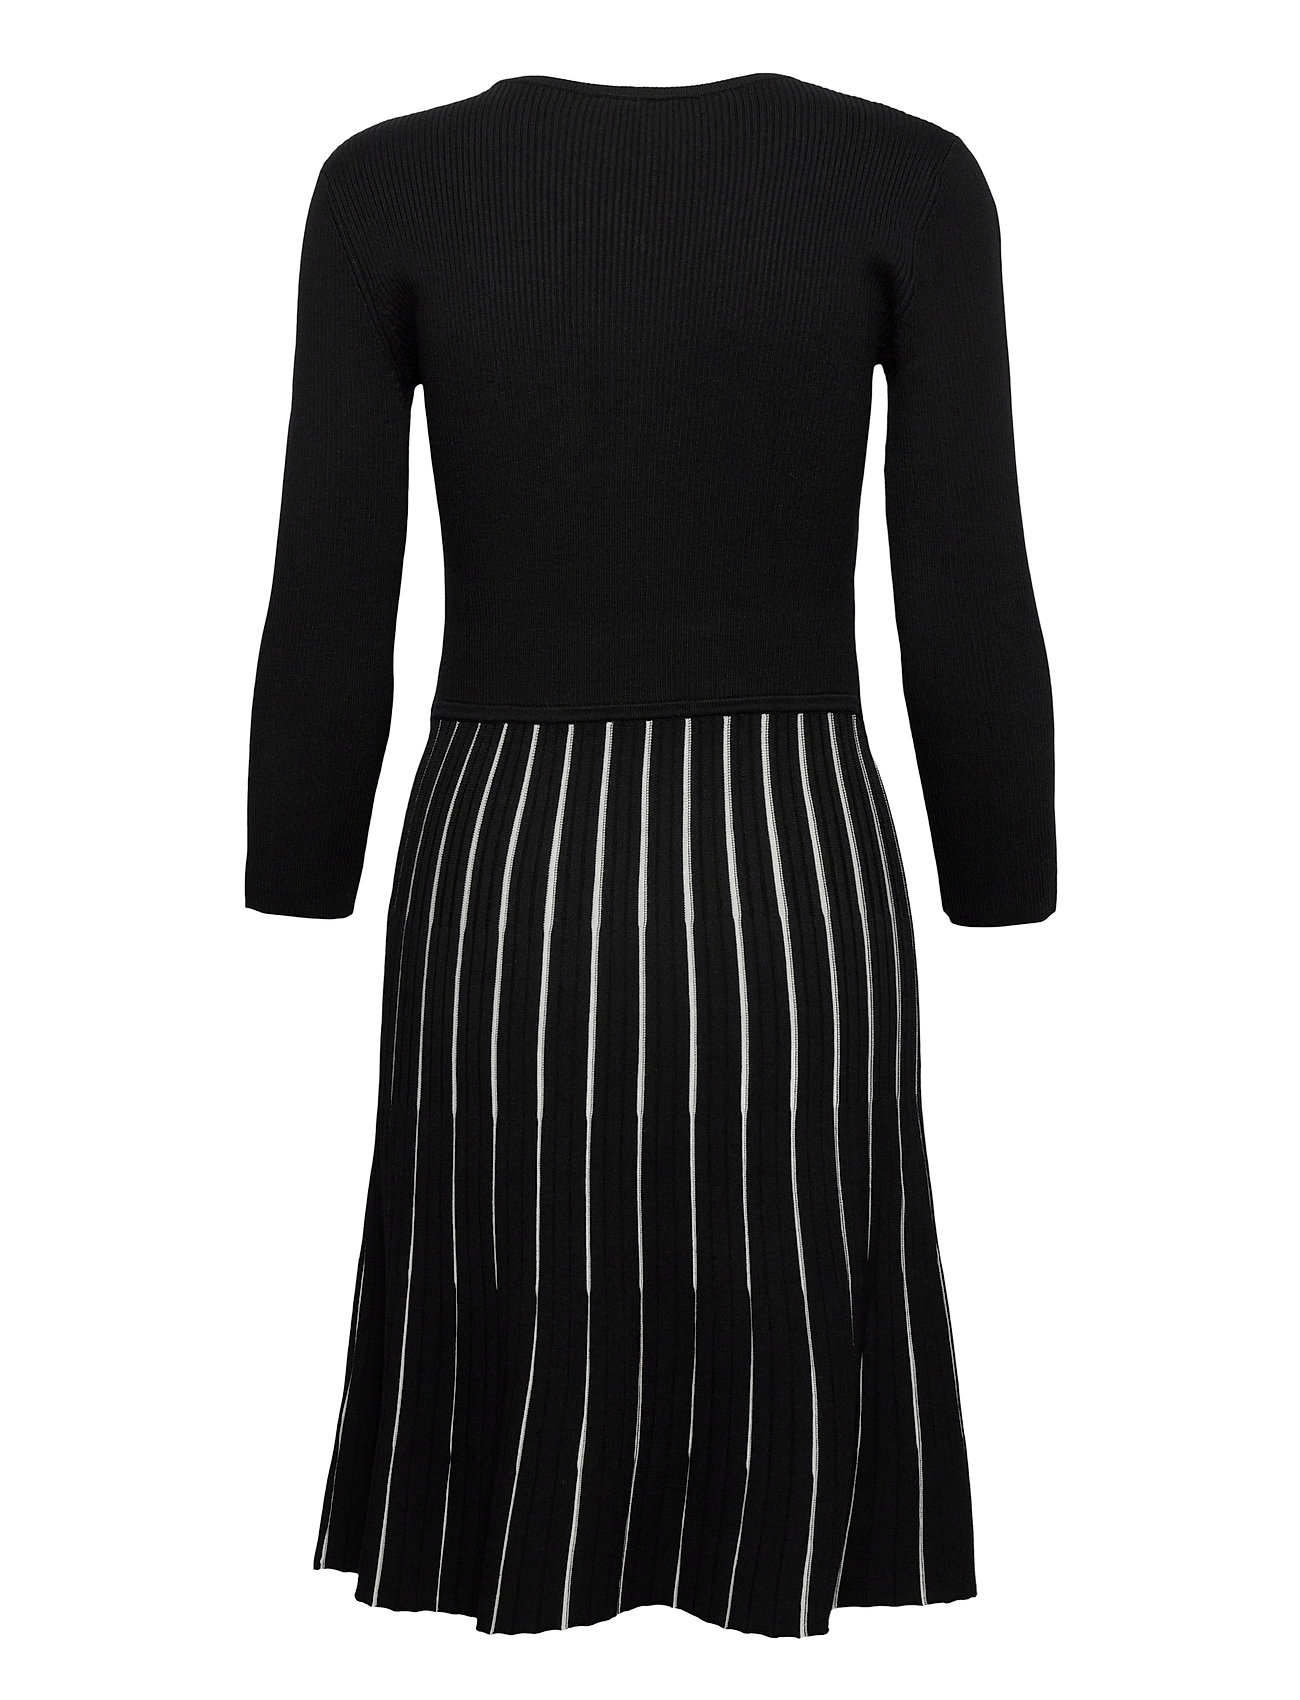 Esprit midikjoler – Dresses Flat Knitted Kjole Grå Esprit Collection til dame i Sort